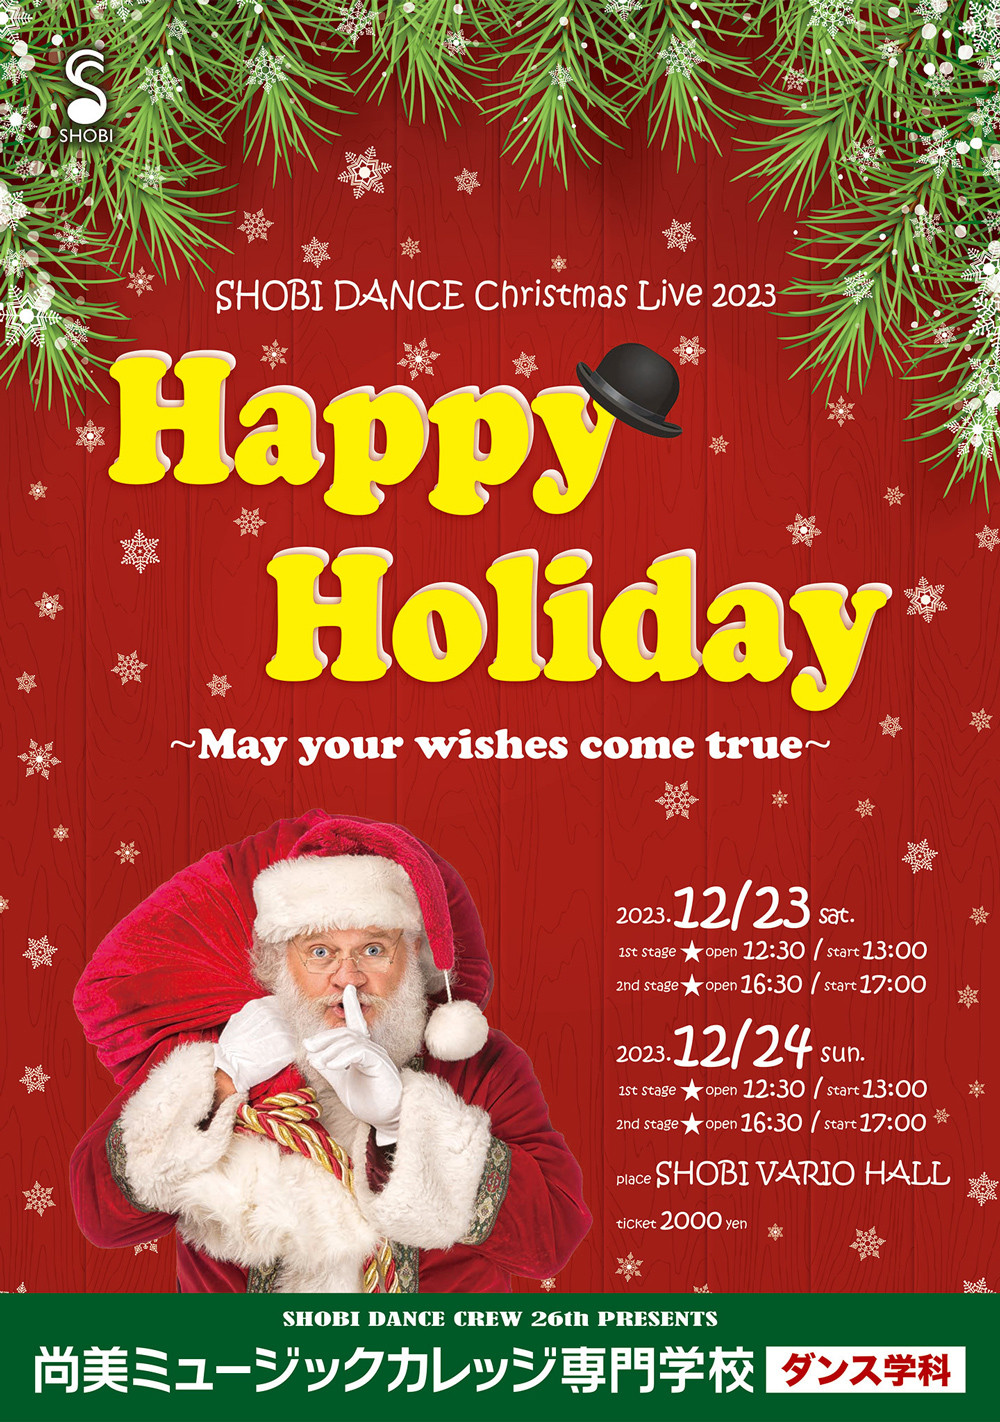 【12月23日・24日開催】SHOBI DANCE Christmas Live 2023「Happy Holiday〜May your wishes come true〜」